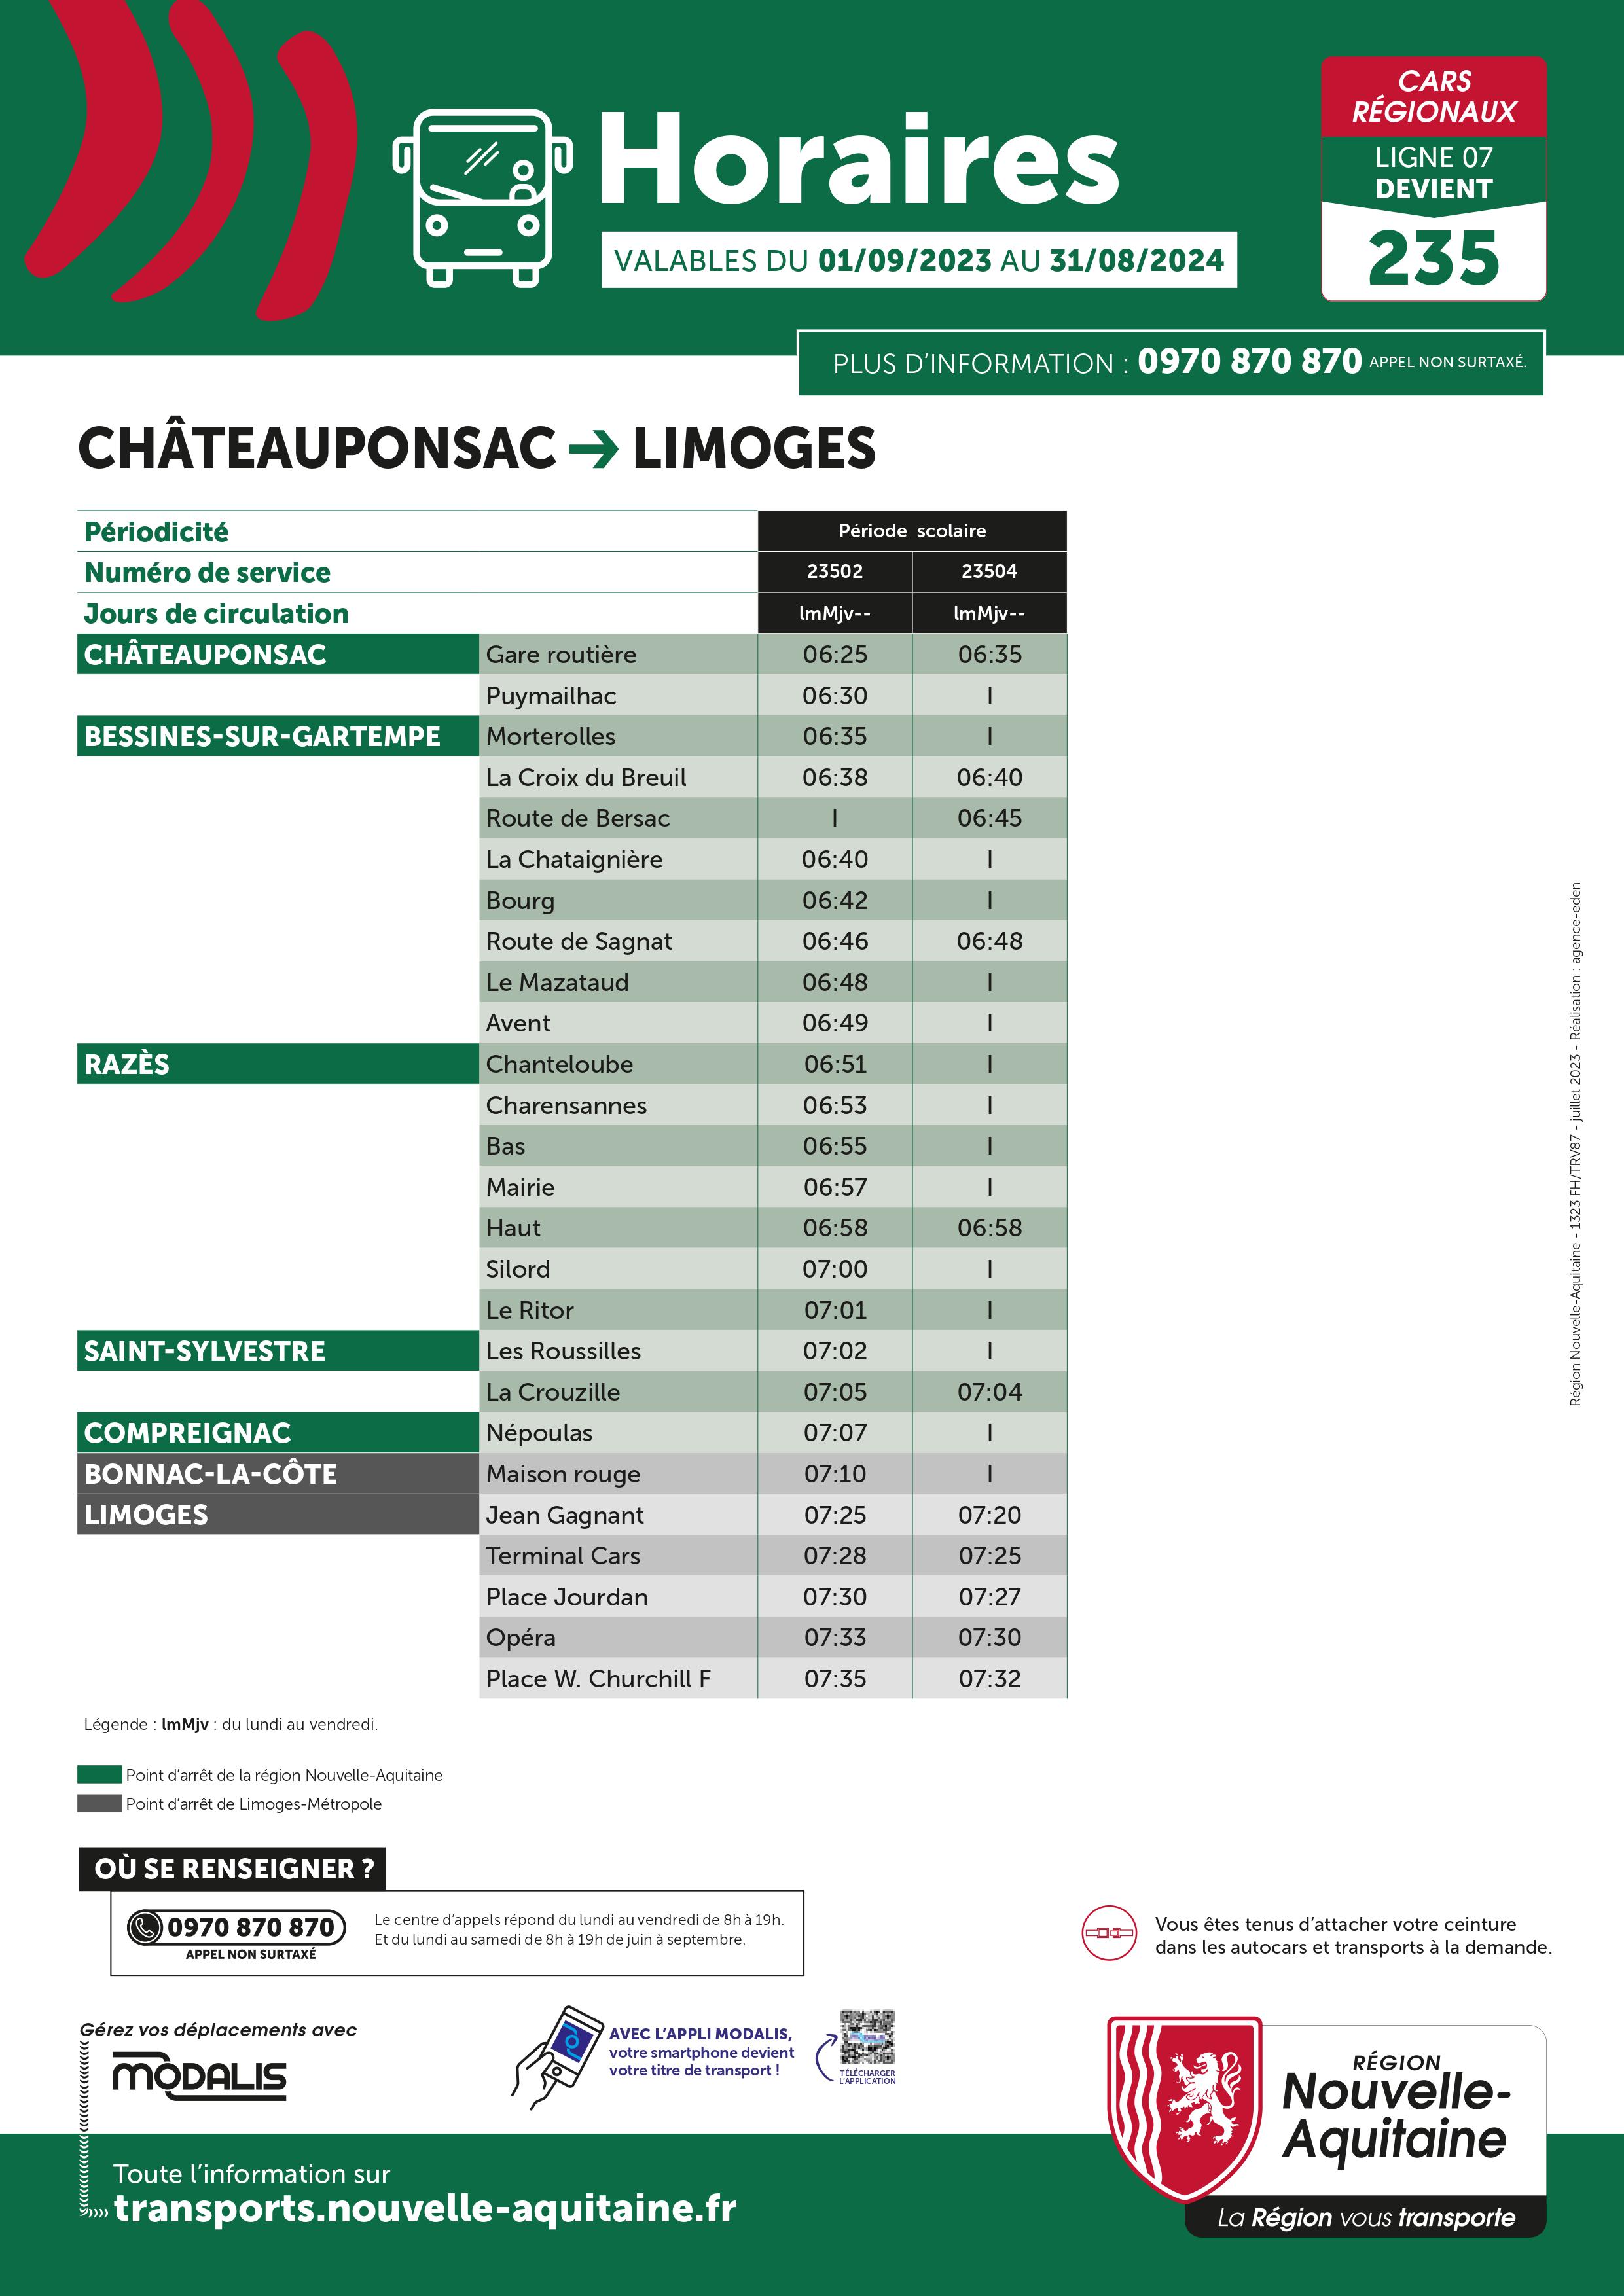 Fiche Cars régionaux-Limoges-Châteauponsac-1.jpg